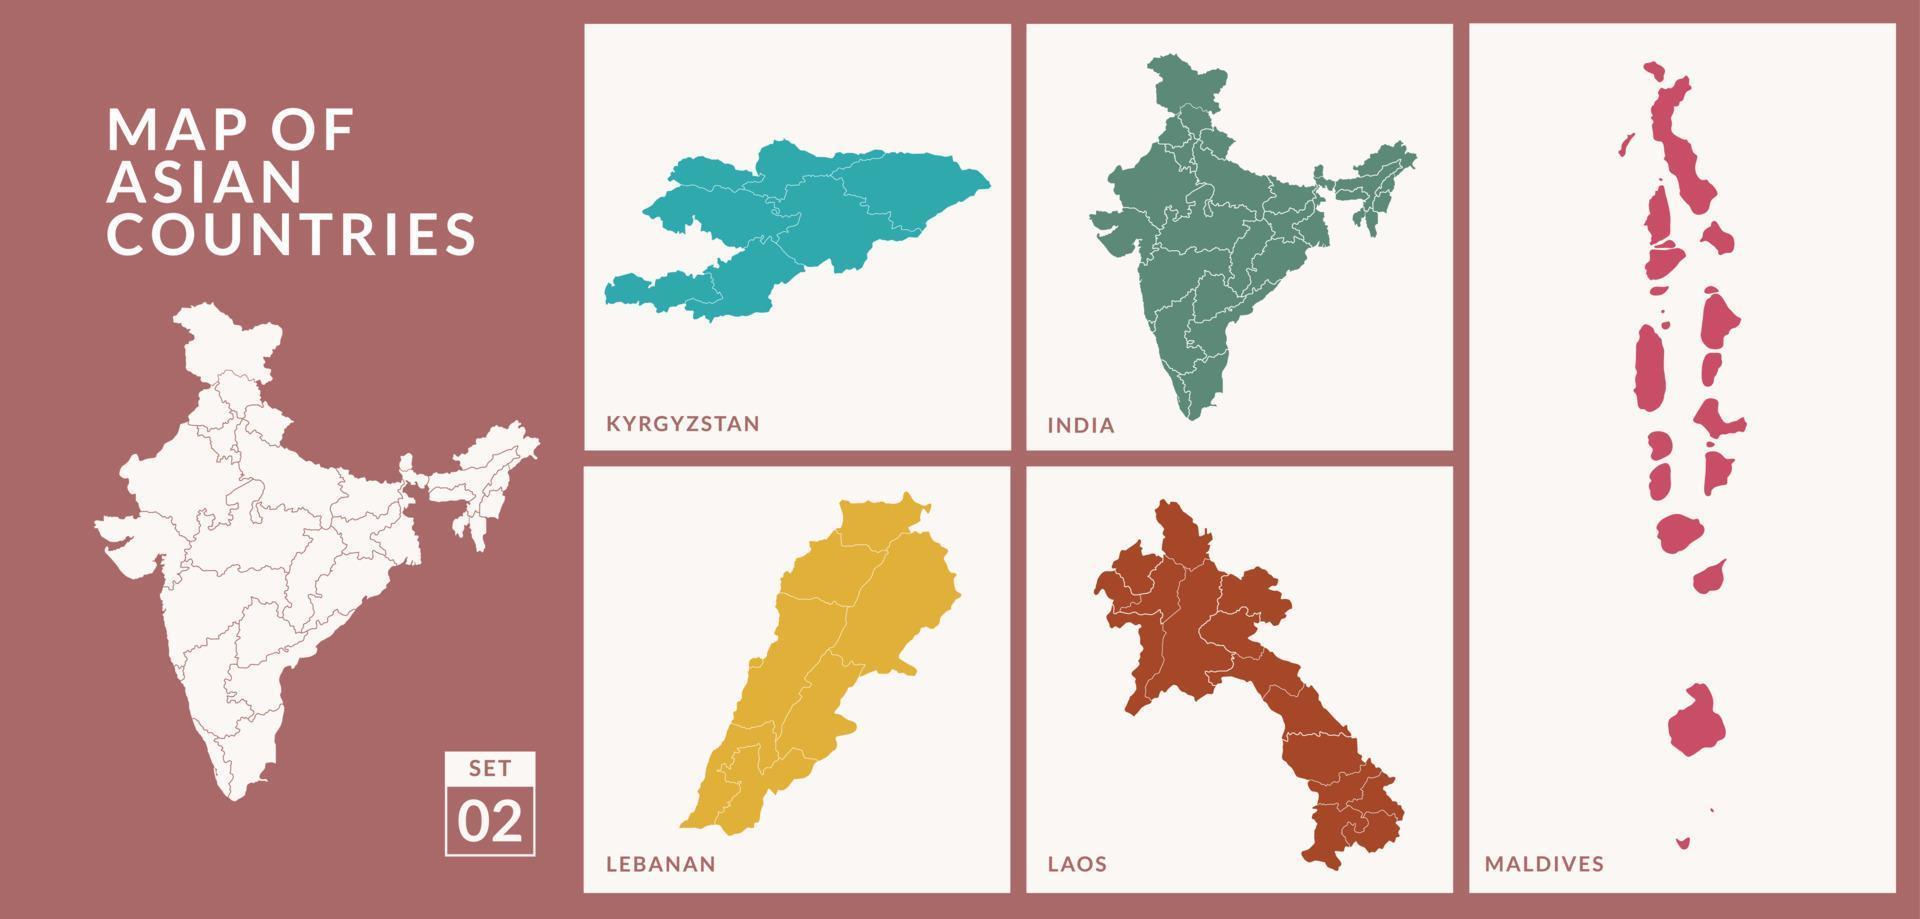 Kartor av asiatisk länder länder, Indien, maldiverna, Kirgizistan, laos och libanan vektor illustration.